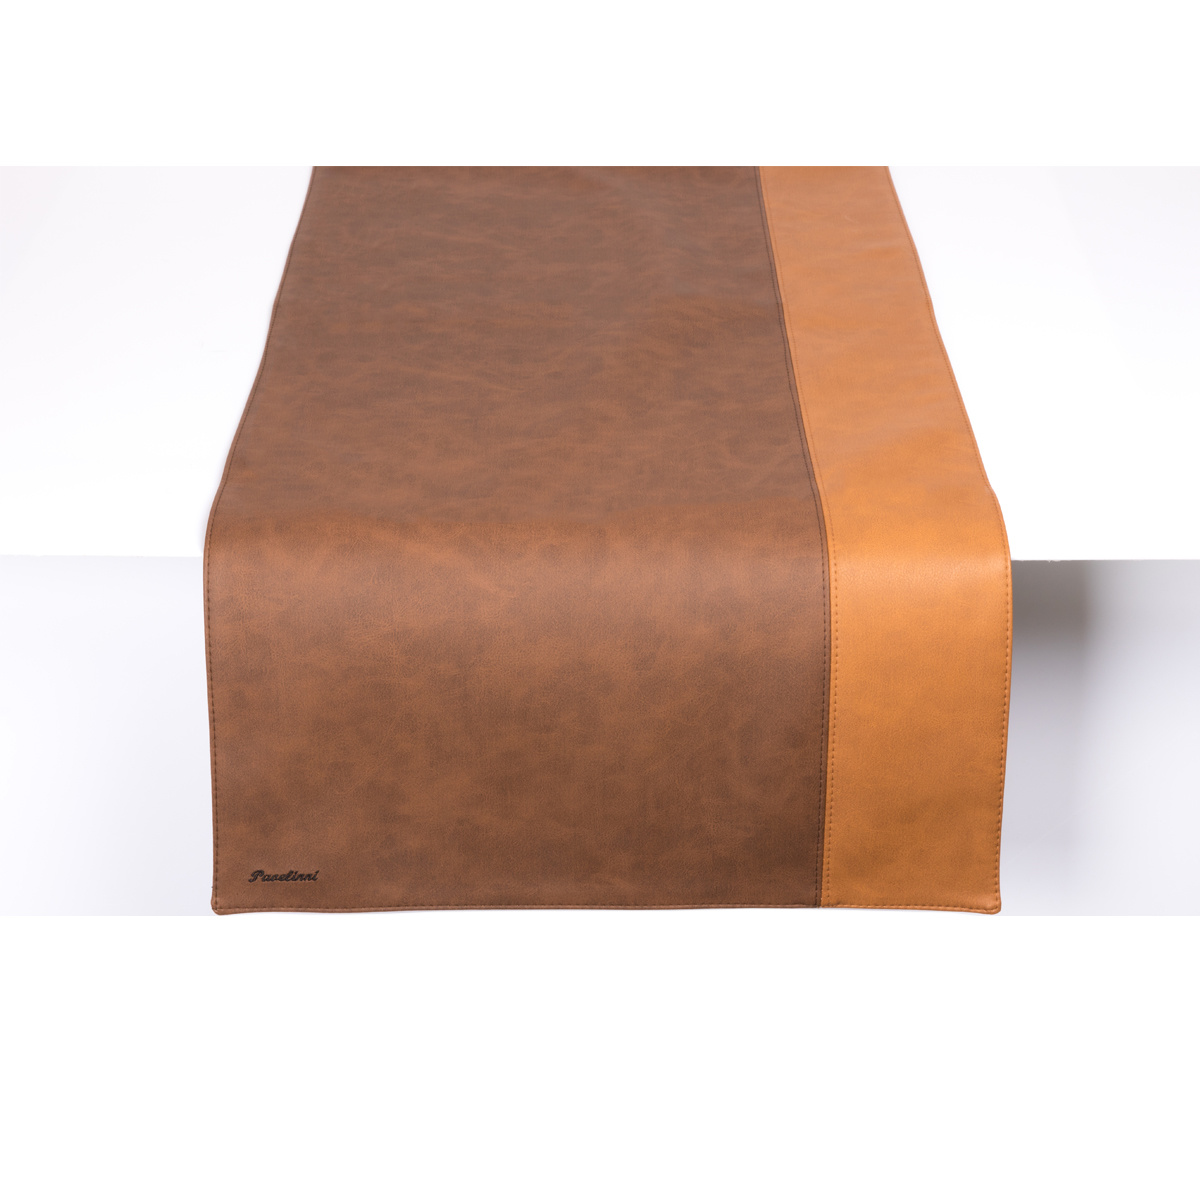 Leder Tischläufer | Streifen Havanna/Cognac | Doppelseitig | 450x1200mm | Erhältlich in 10 Farben